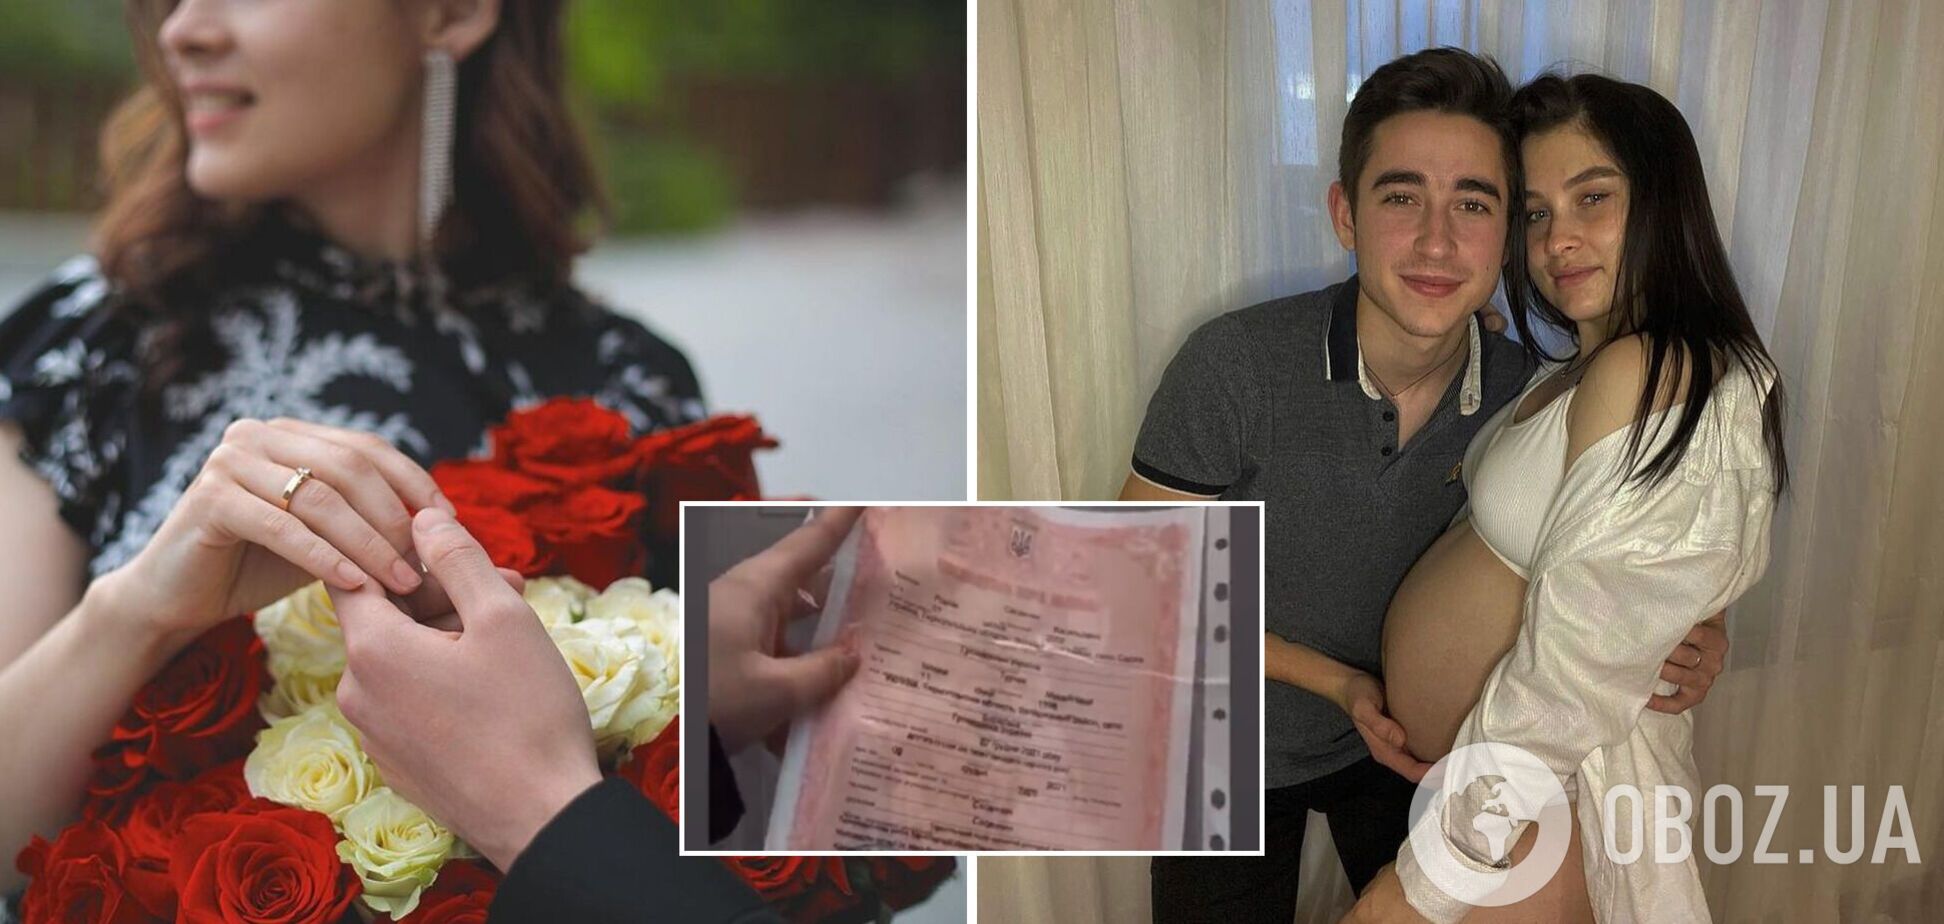 19-річний Роман Сасанчин одружився з 23-річною вагітною дівчиною і от-от стане татом